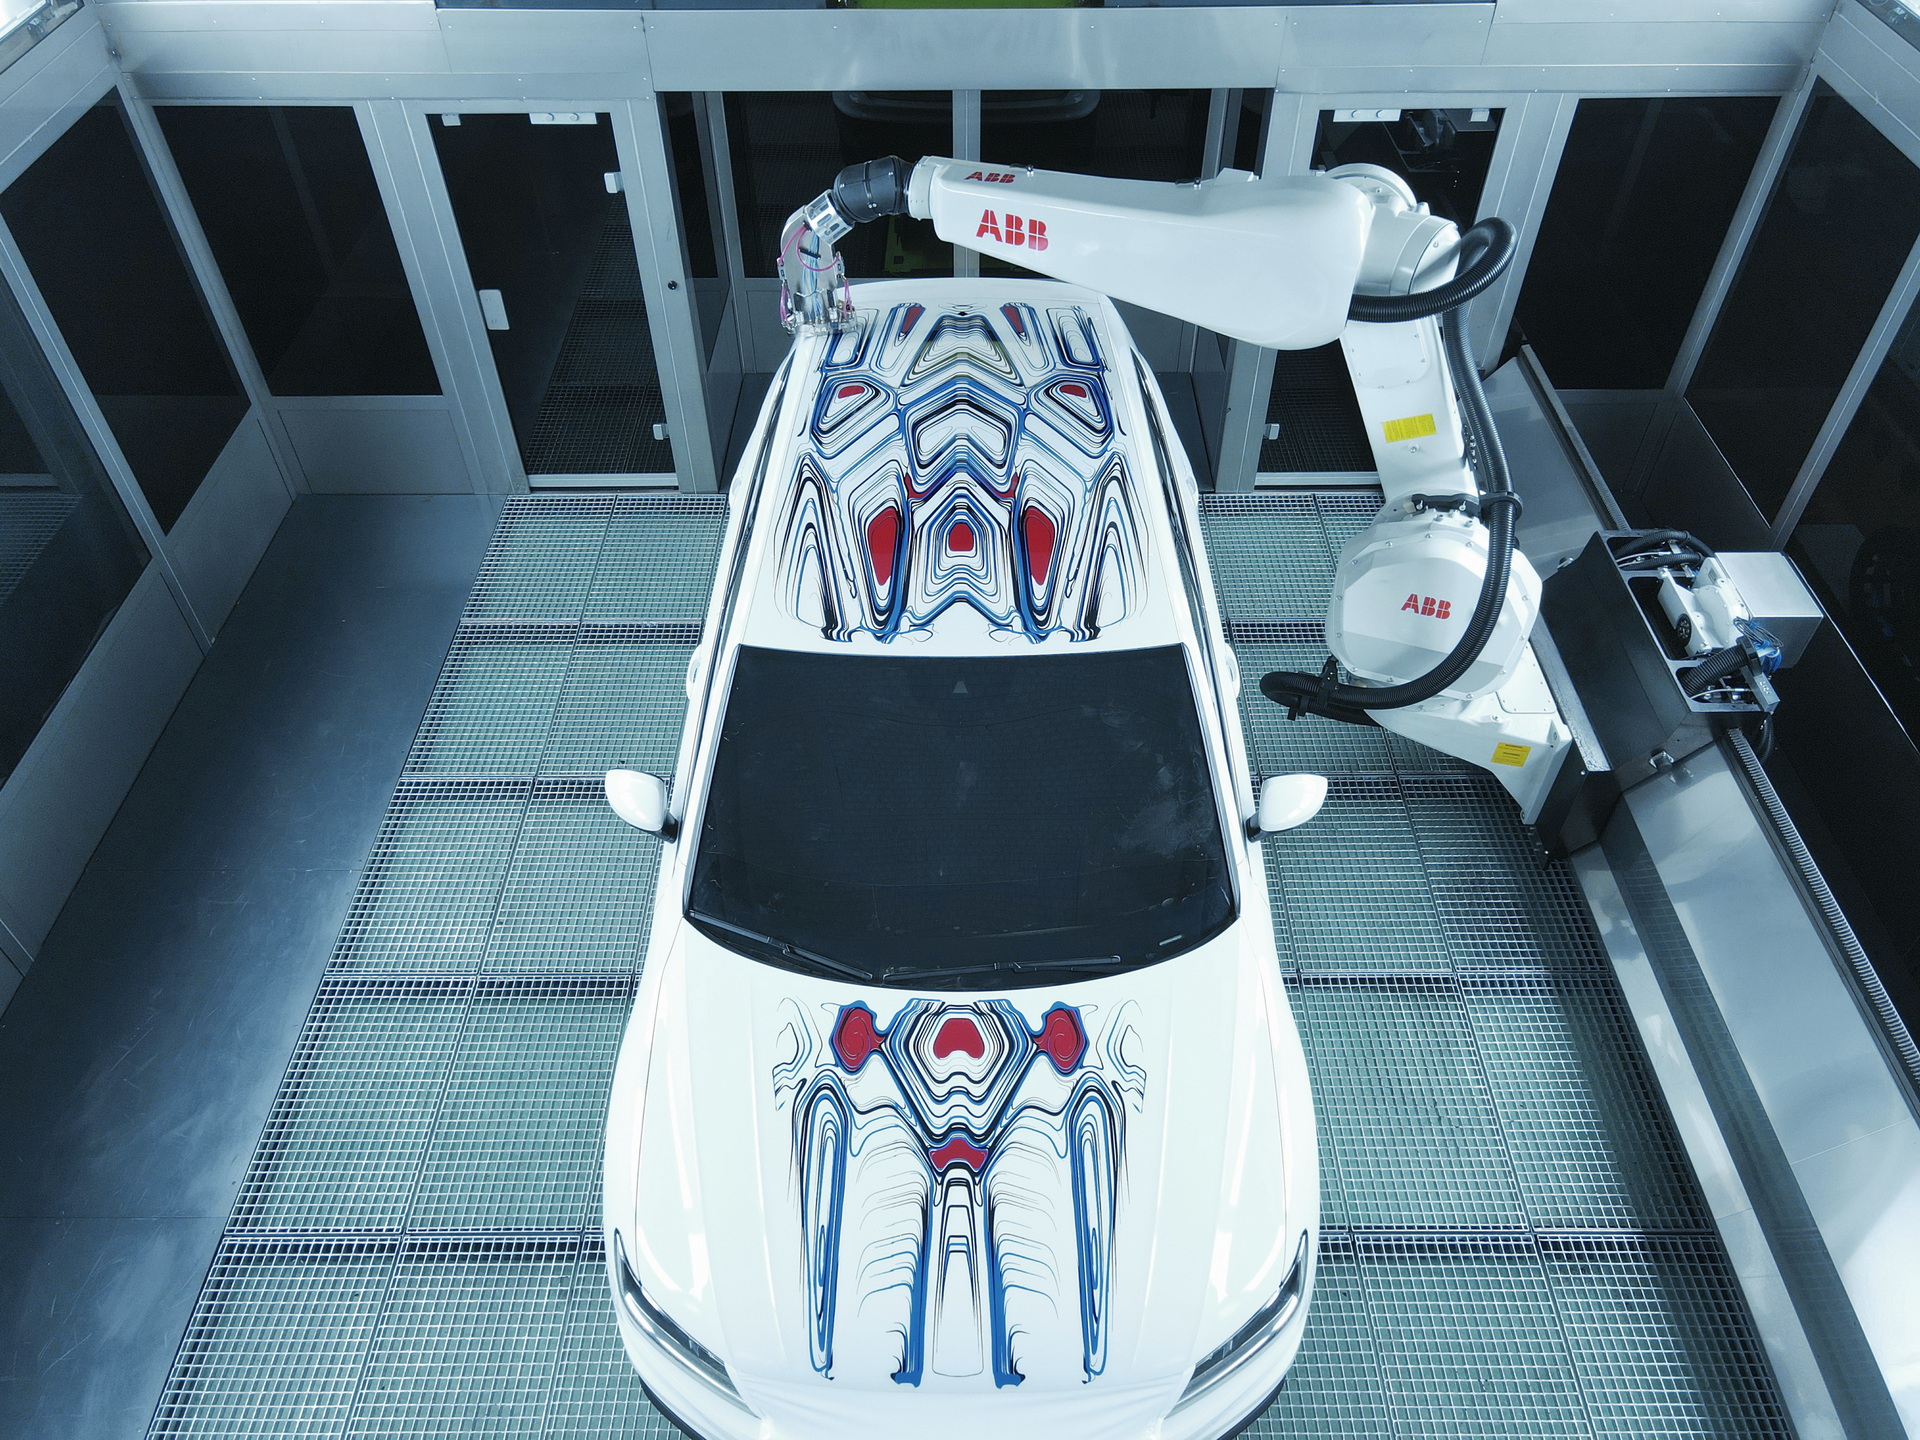 Abb Robotic Paint Car Pertama Di Dunia, ABB Memamerkan Paintbot Yang Dapat Melukis Mobil Dalam Waktu 30 Menit